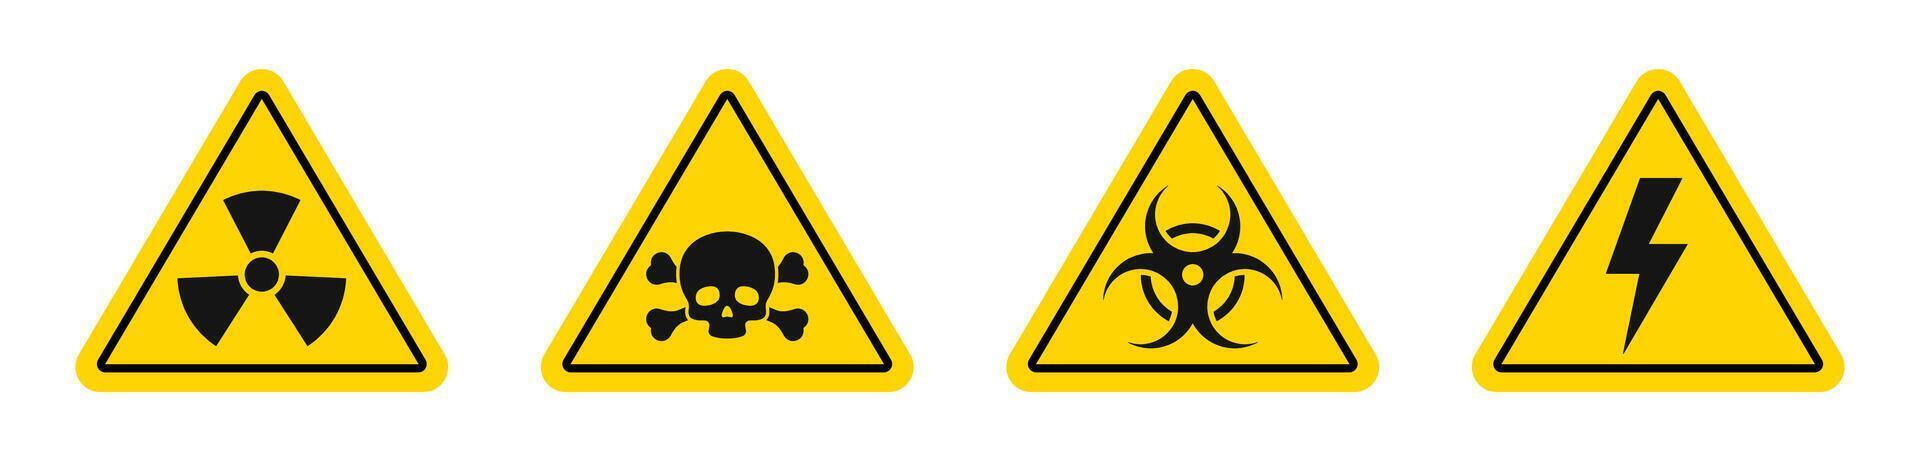 fara tecken. fara, varning tecken ikon uppsättning. förgifta, toxisk, biohazard varning tecken. gul triangel varning symbol element. vektor